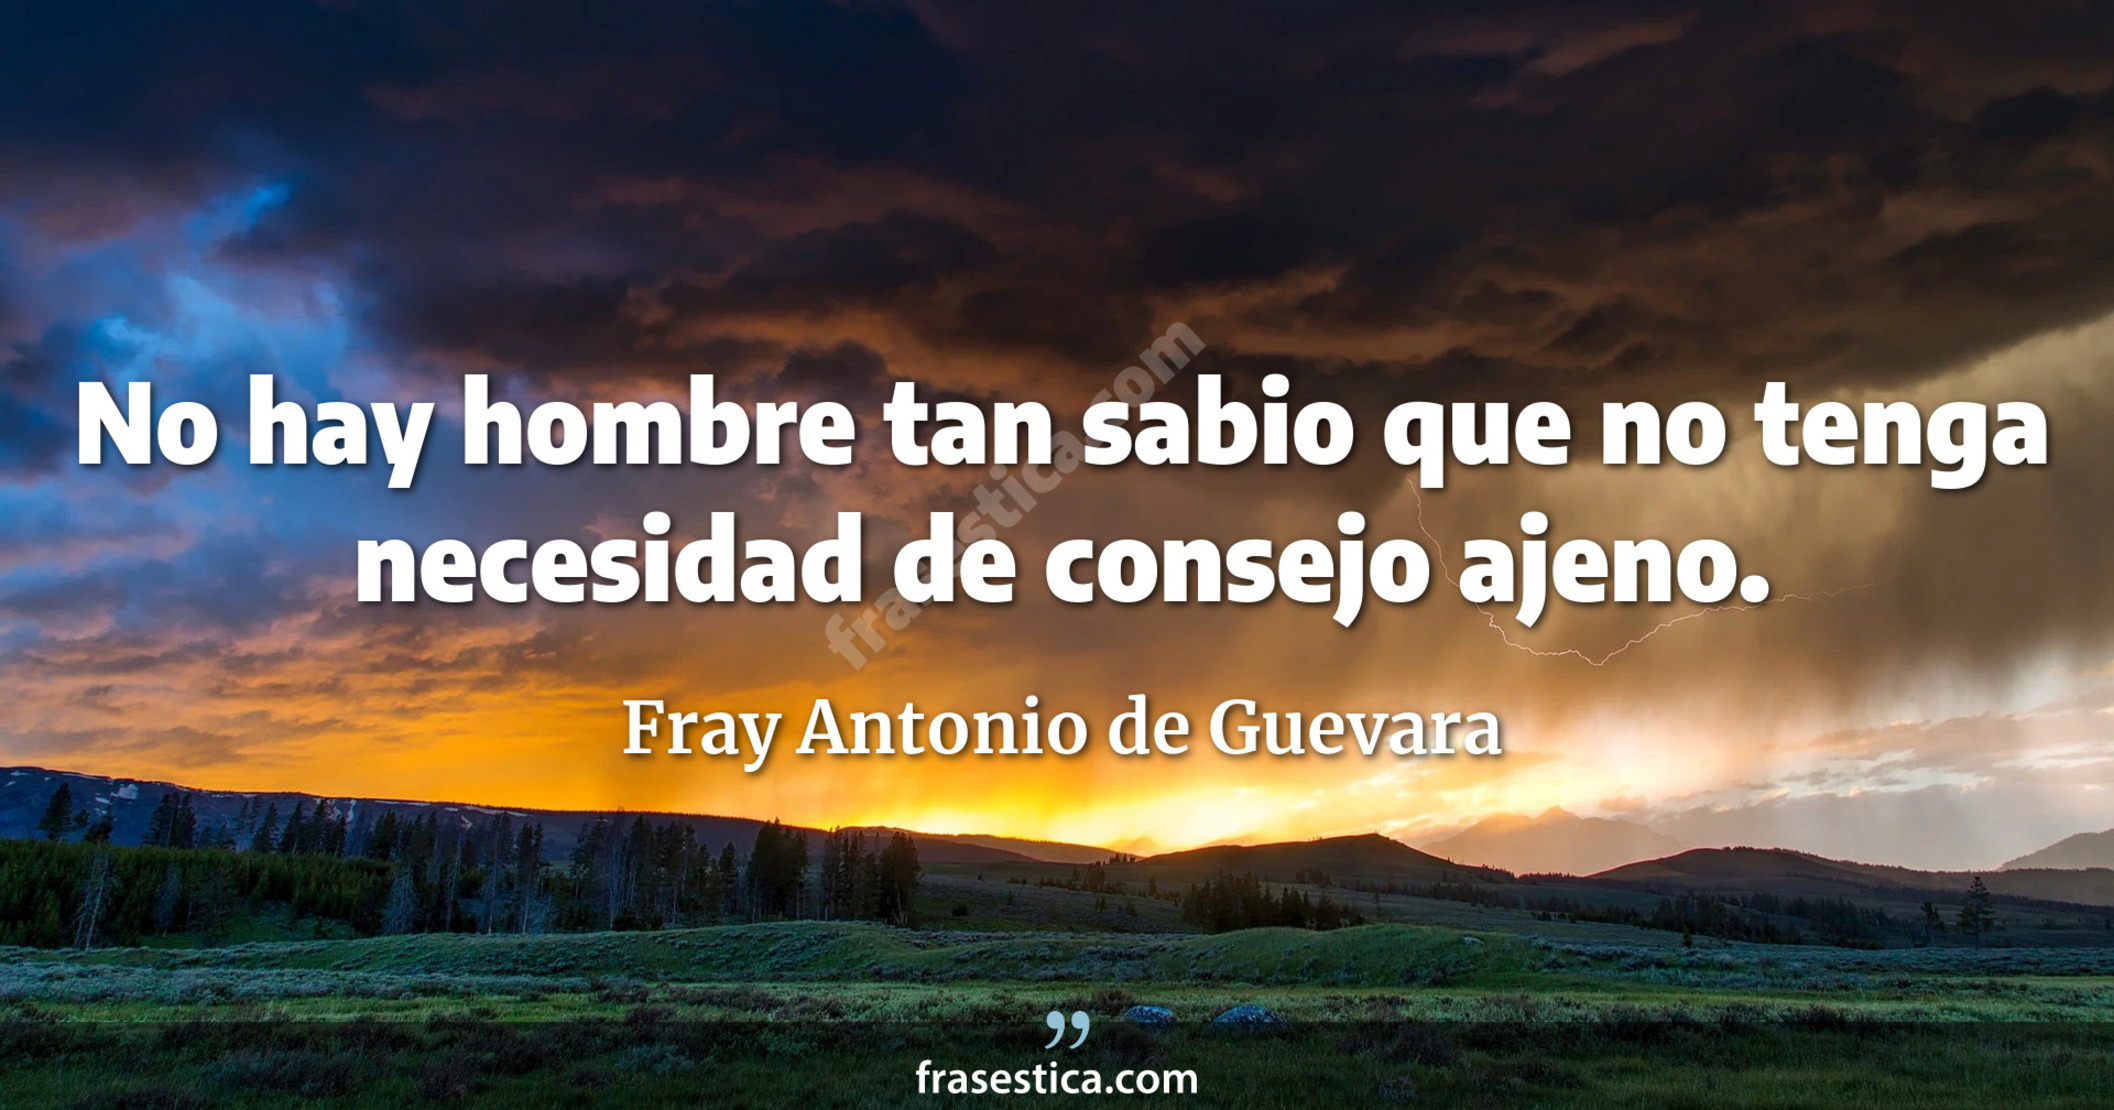 No hay hombre tan sabio que no tenga necesidad de consejo ajeno. - Fray Antonio de Guevara